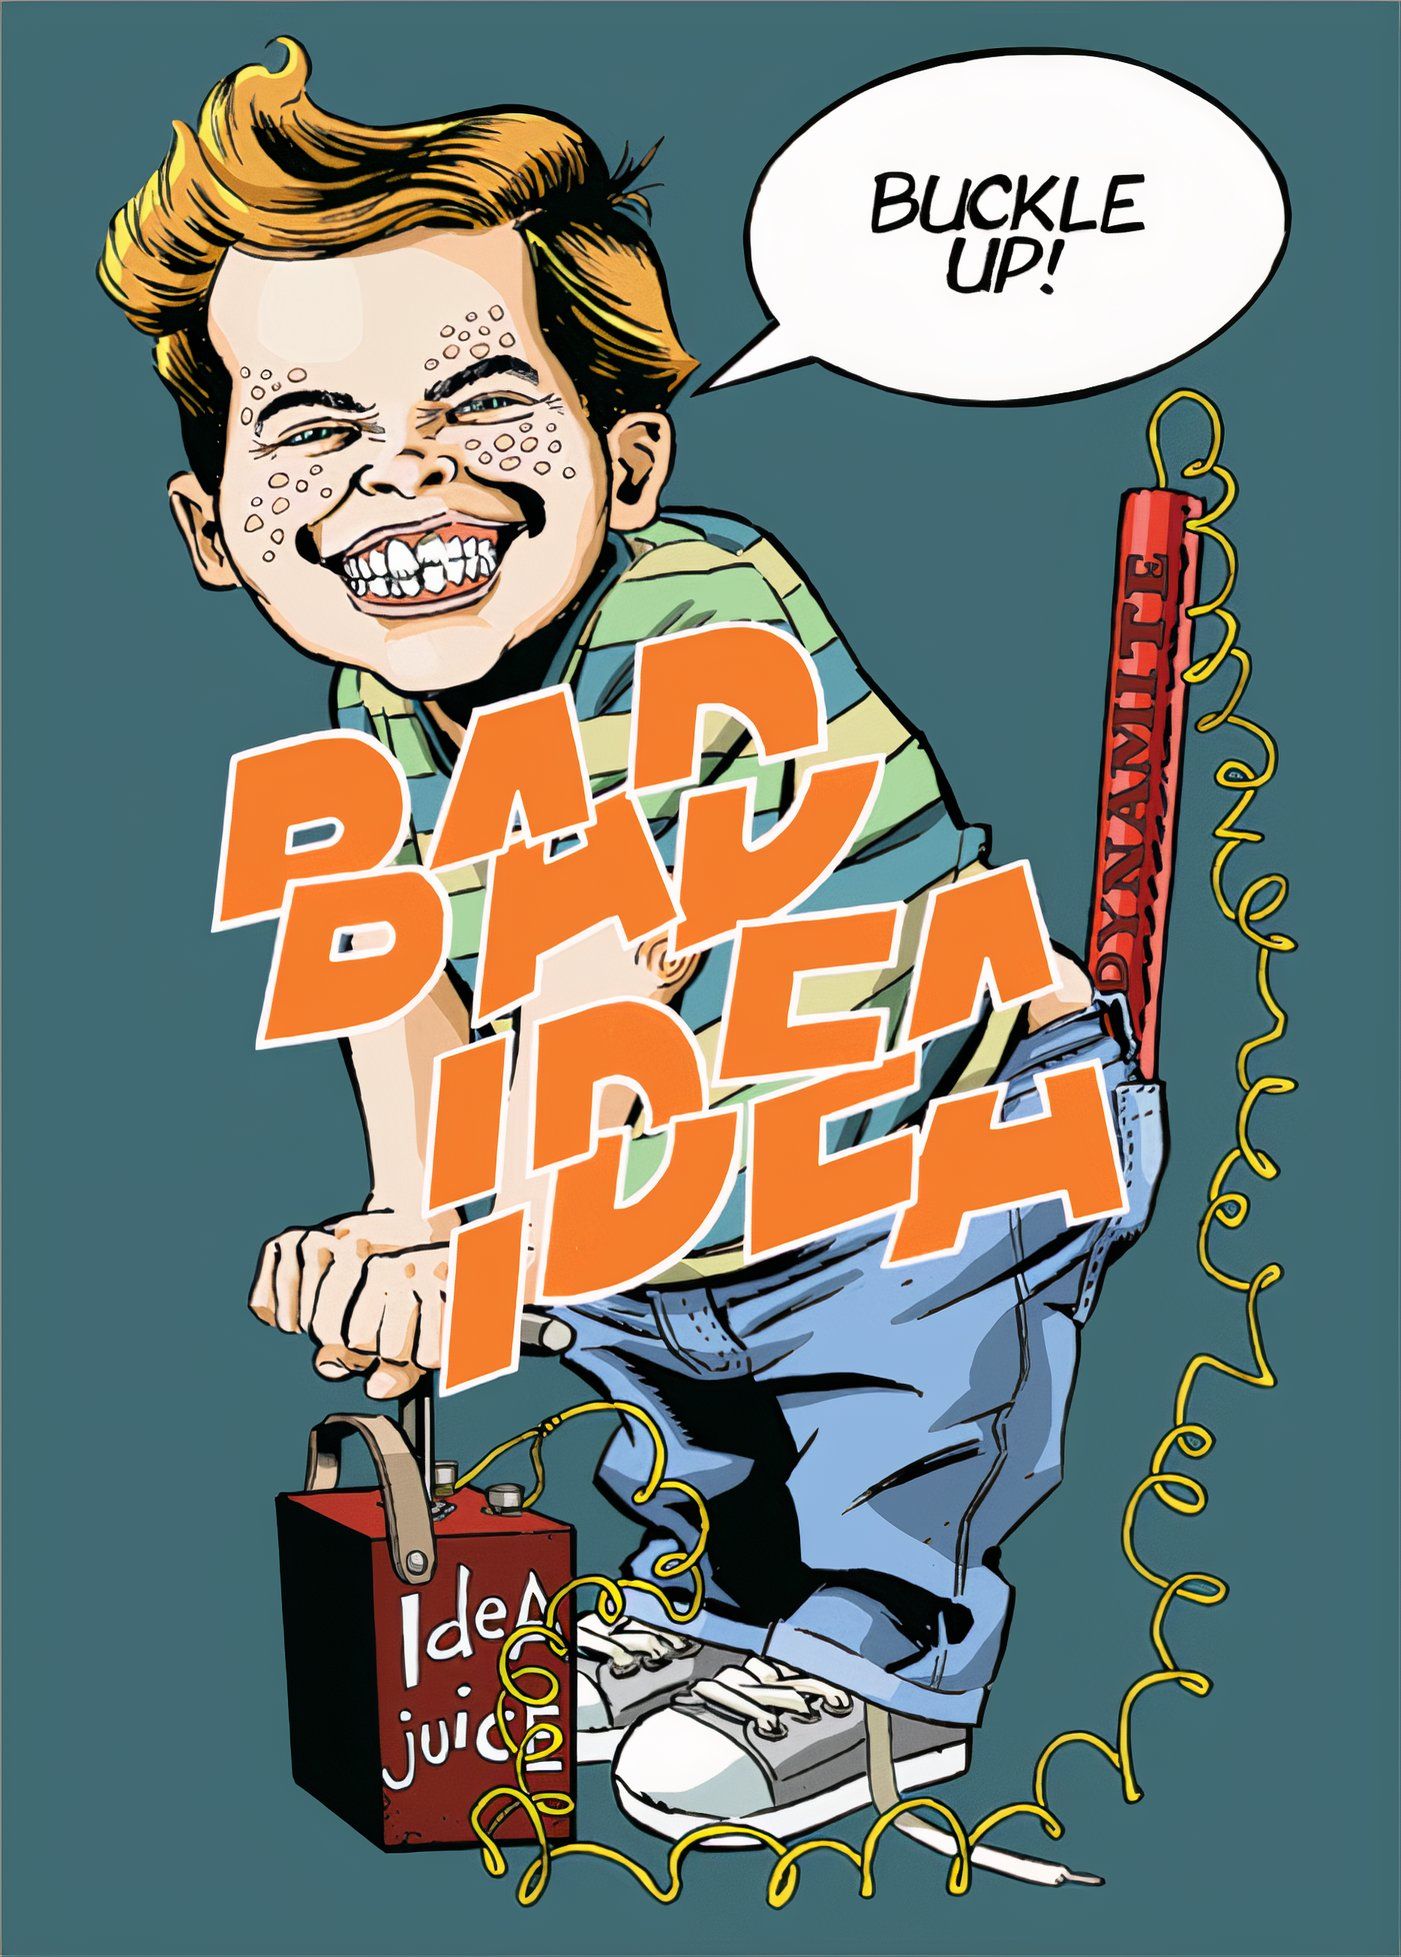 Bad Idea advertising image: child pushing dynamite stick